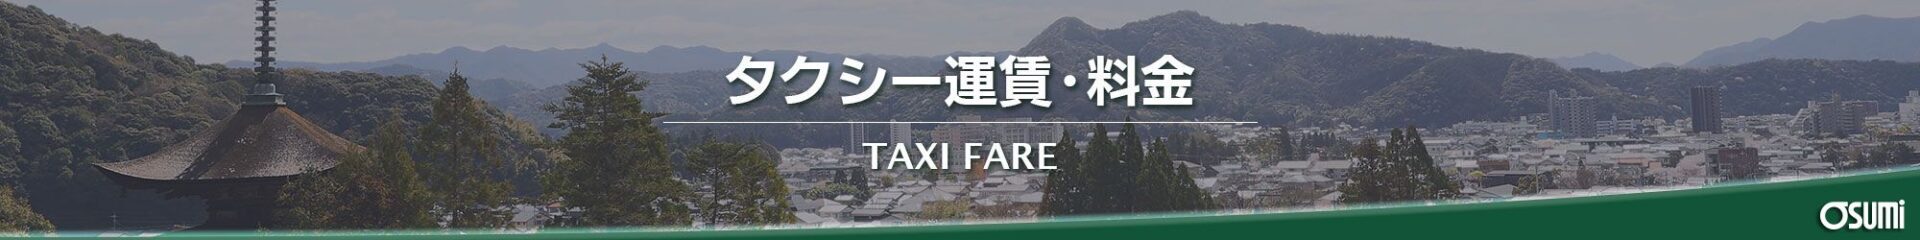 タクシー運賃・料金ページタイトル